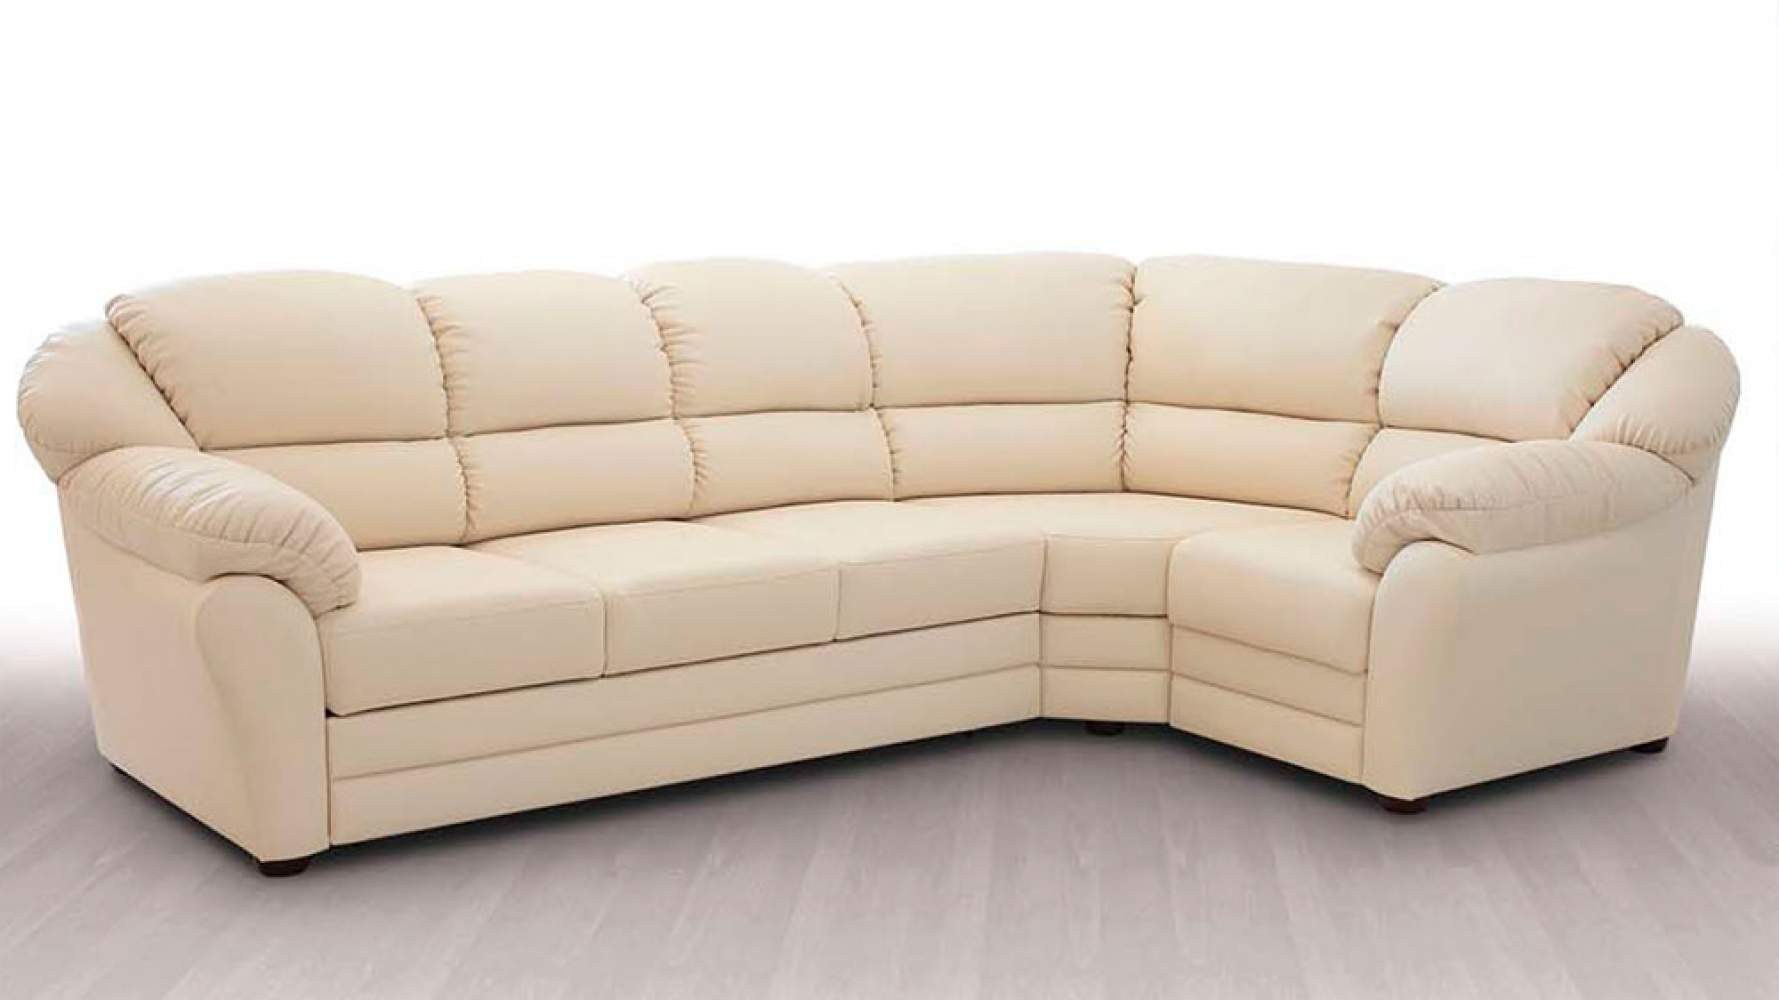 Купить угловой диван недорого от производителя распродажа. Диван угловой. Диван с углом. Диван угловой мягкий. Мягкая мебель диваны угловые.